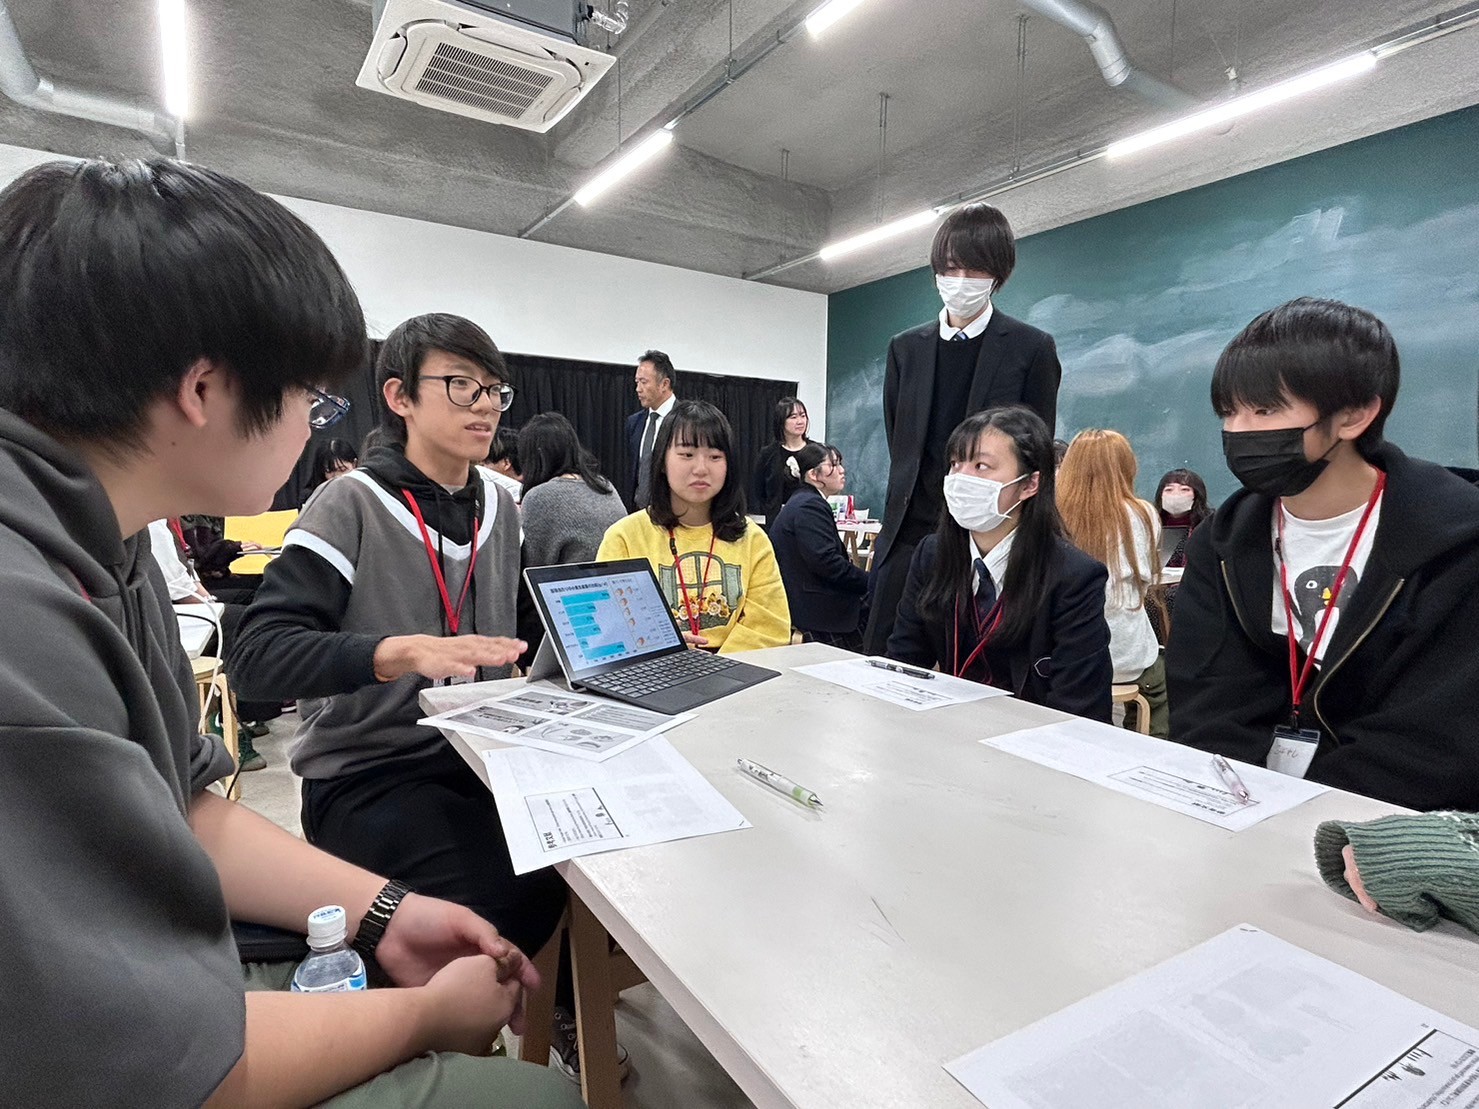 横浜国立大学×JICA横浜連携講座「格差を体験してみよう」を開催しました！